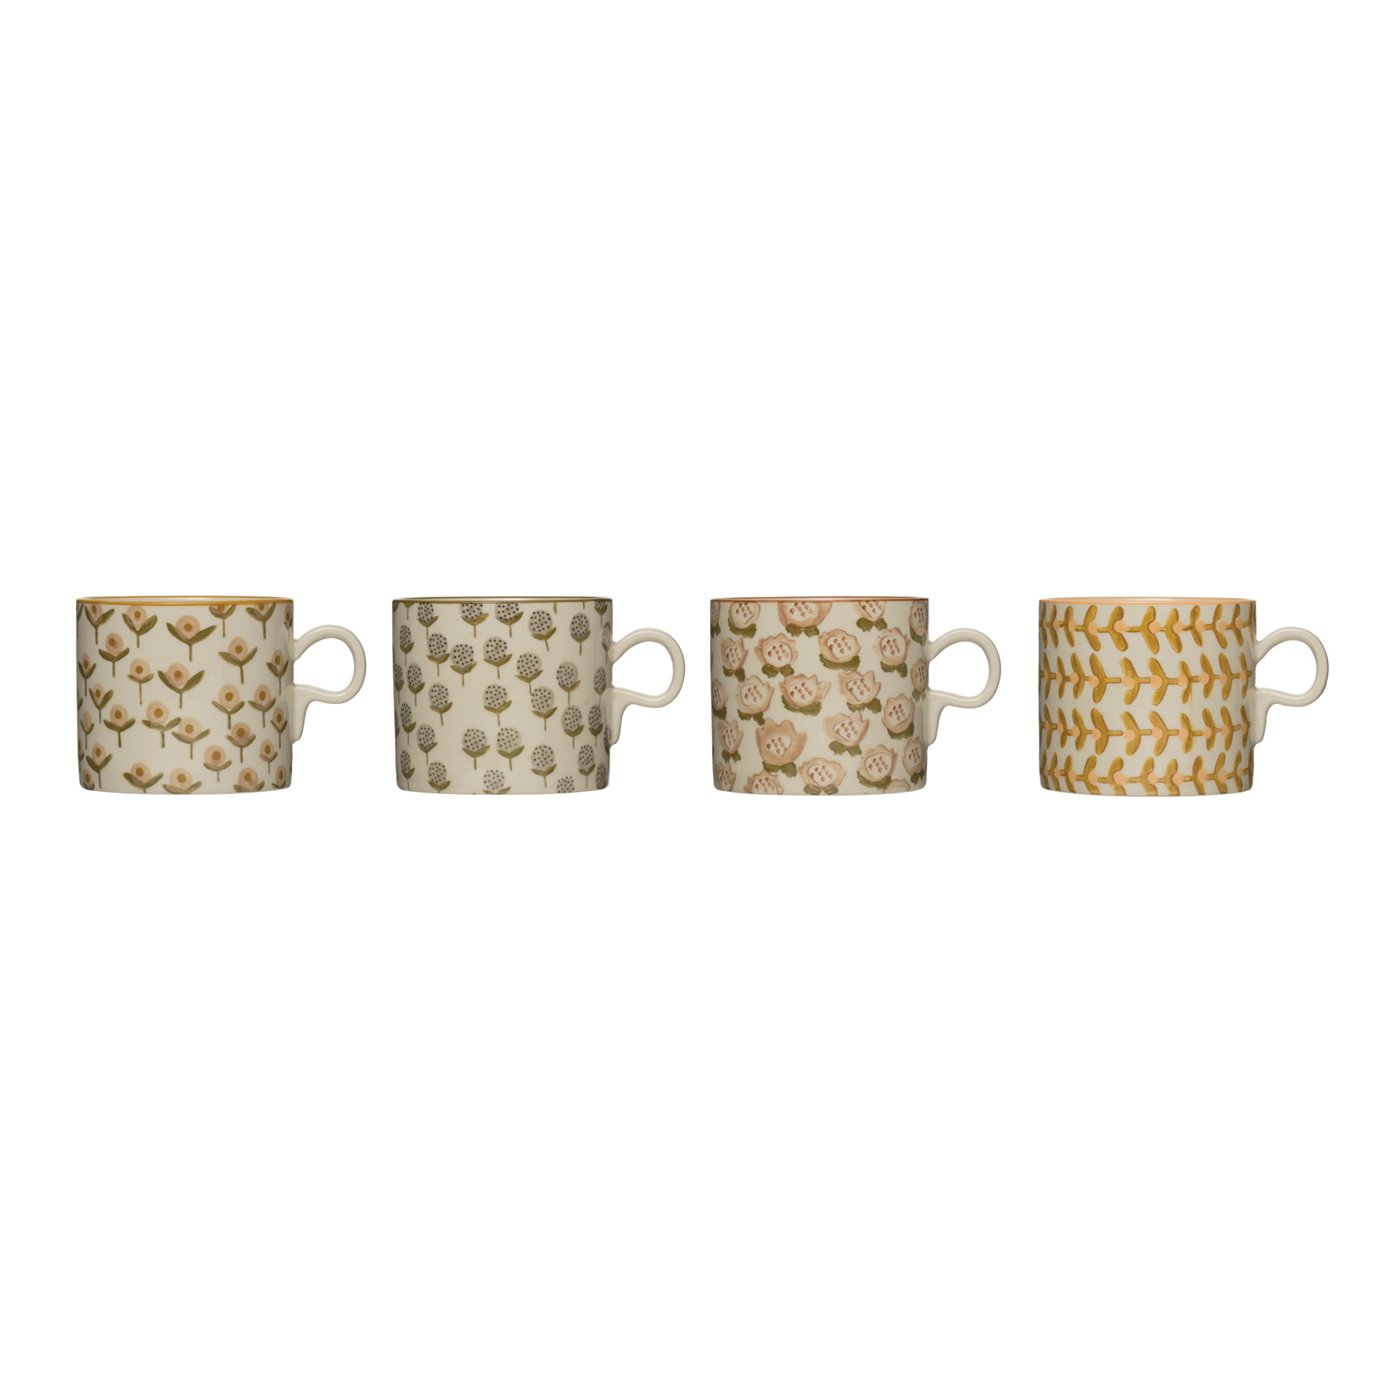 12 oz. Stoneware Mug (Set of 4 Hand-Stamped Patterns)